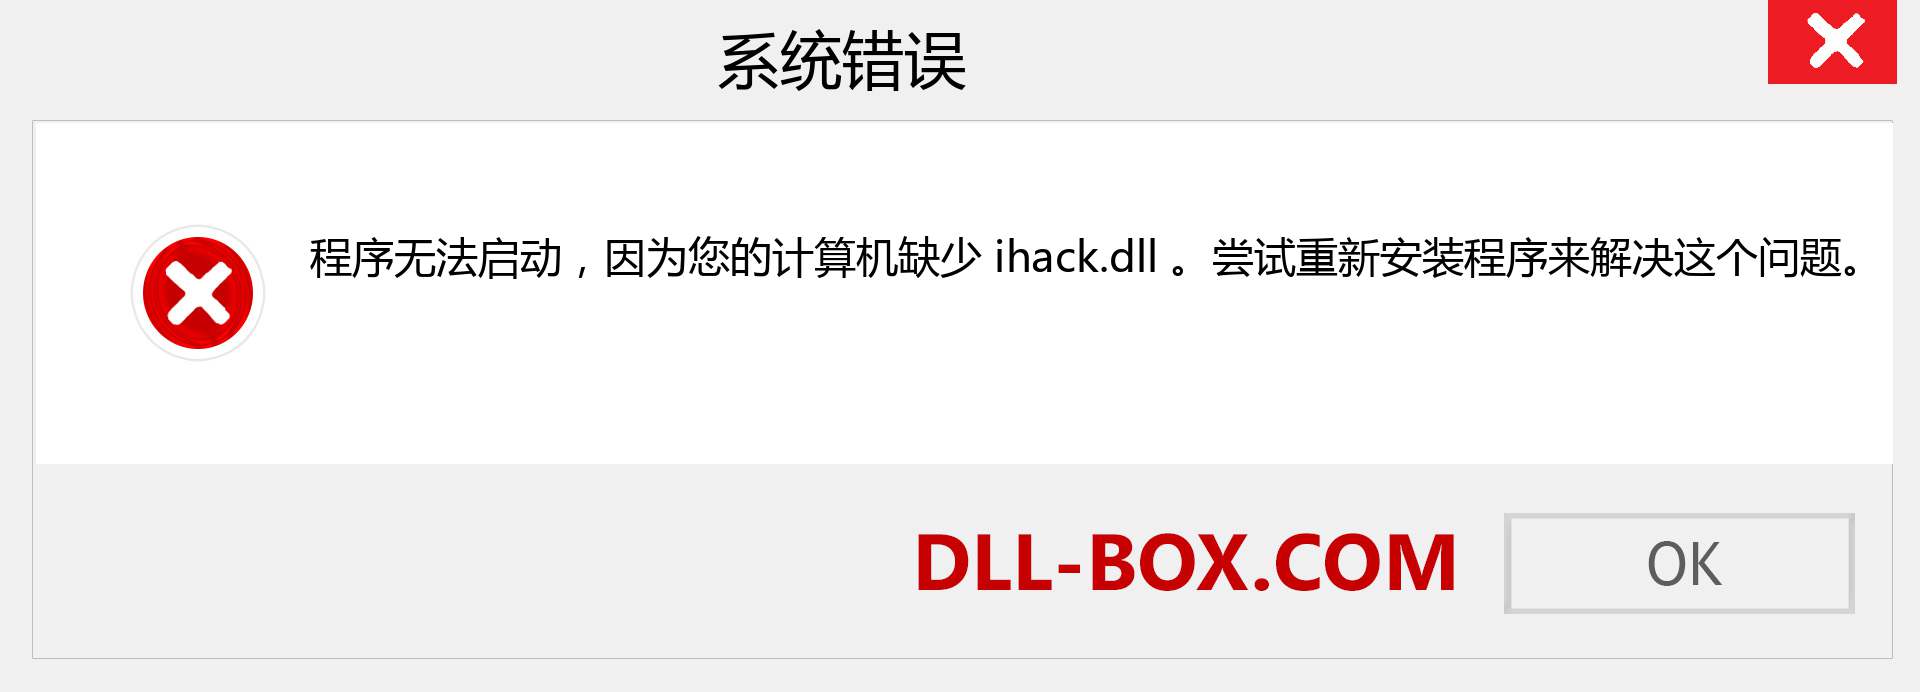 ihack.dll 文件丢失？。 适用于 Windows 7、8、10 的下载 - 修复 Windows、照片、图像上的 ihack dll 丢失错误